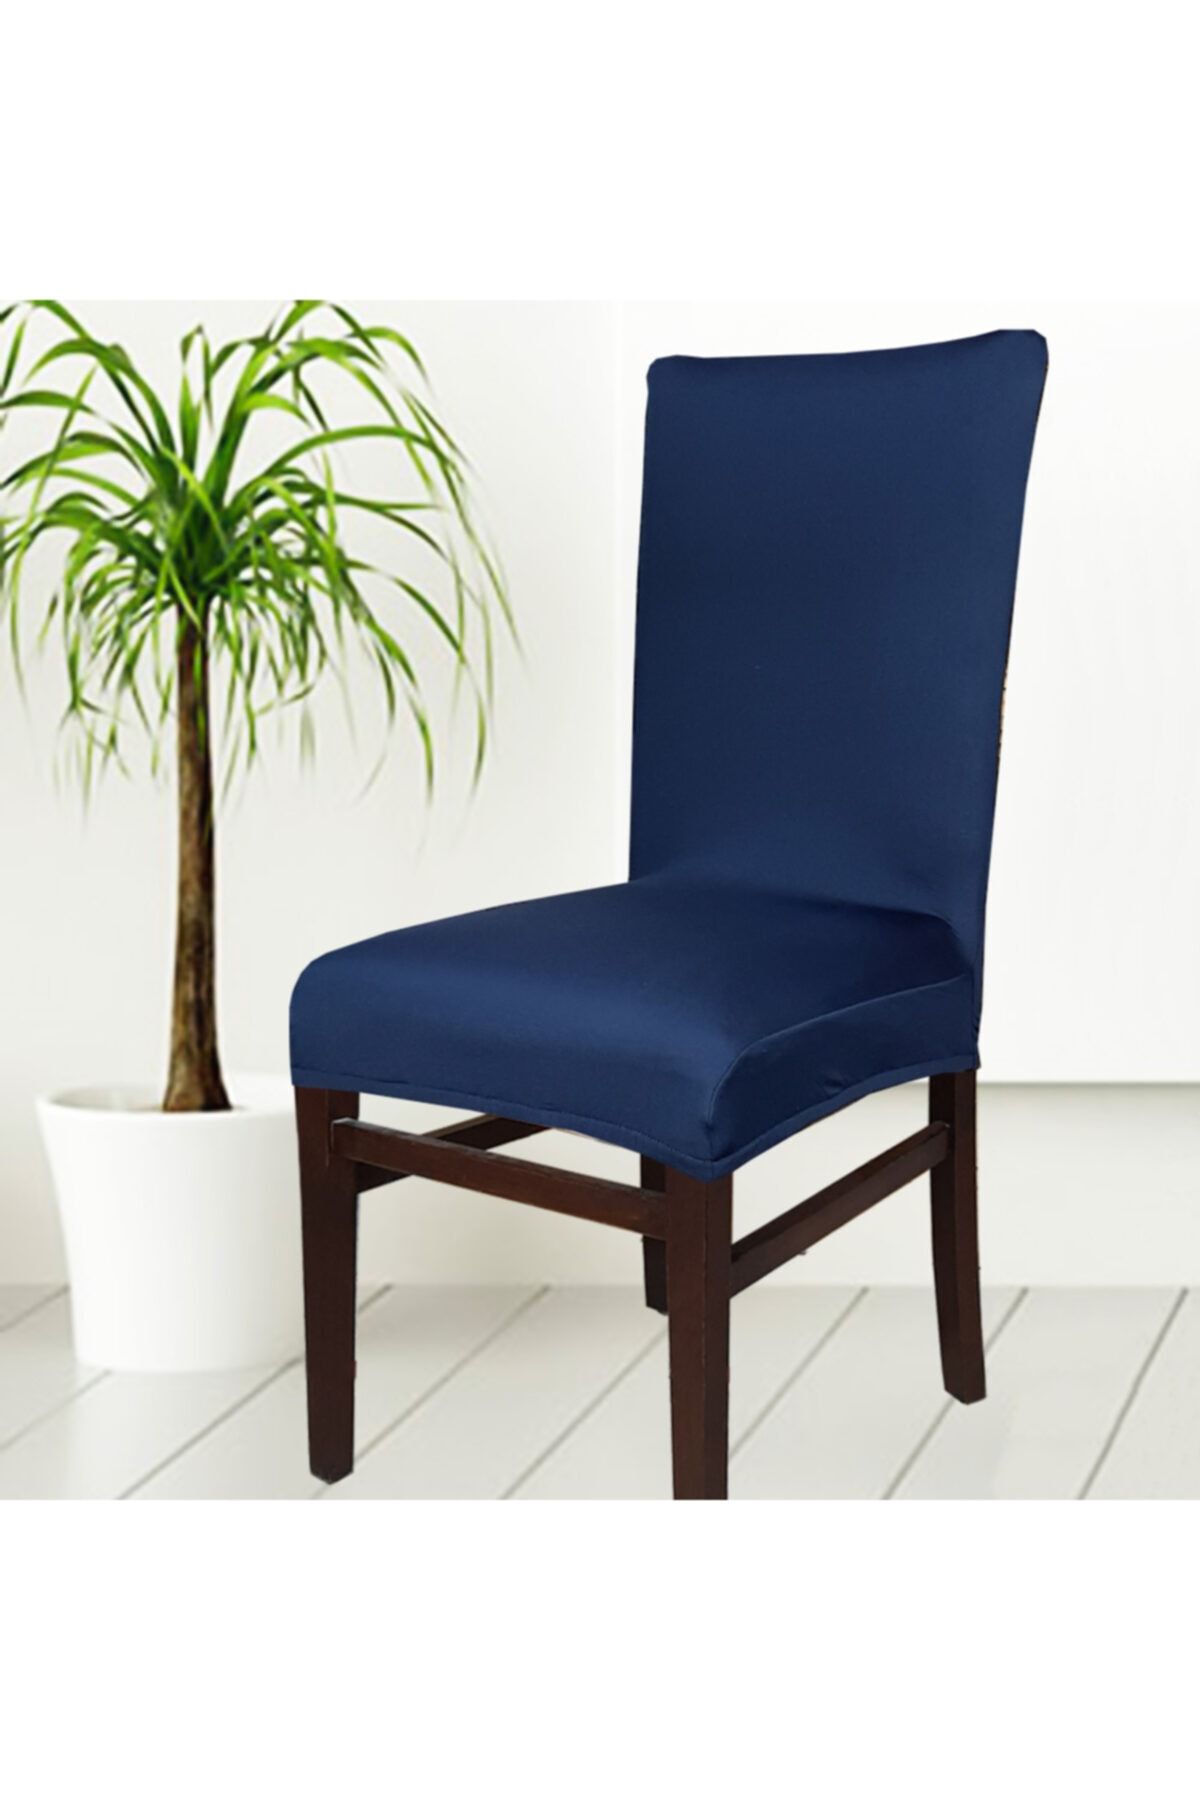 abeltrade Sandalye Kılıfı.kaliteli Mikro Kumaş Lacivert Rengi.standart Kare Sandalyelere Uygun. 1 Li